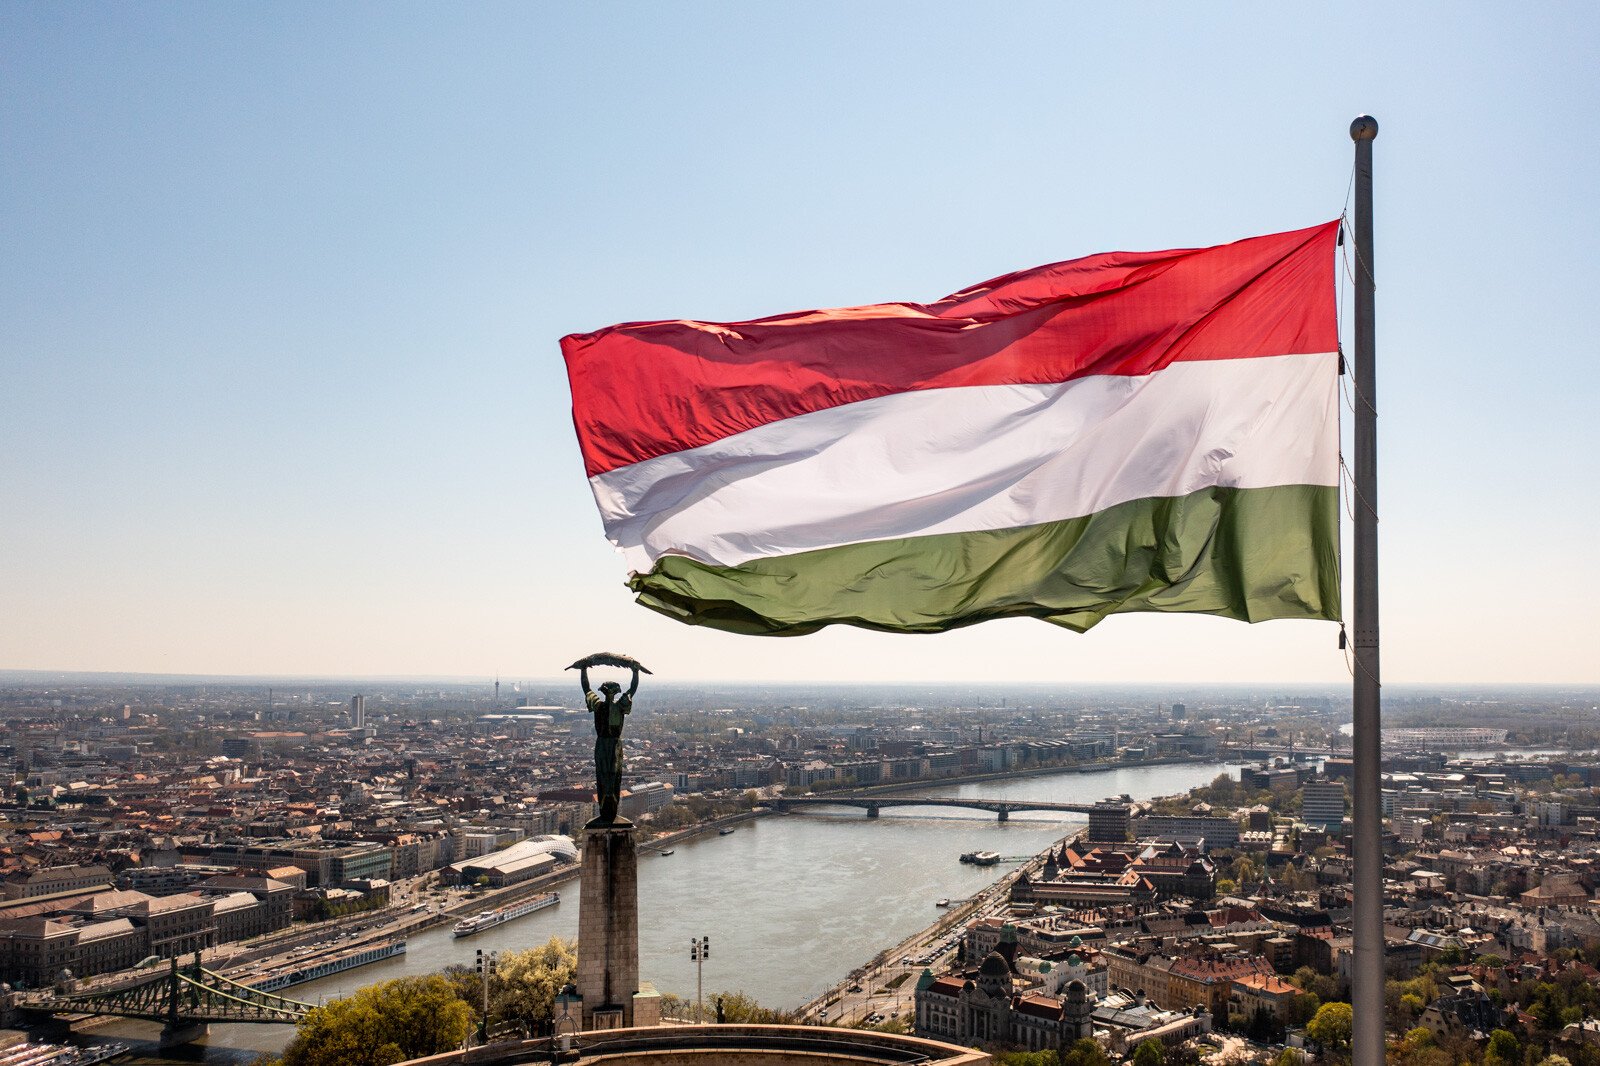 lobogó magyar zászló